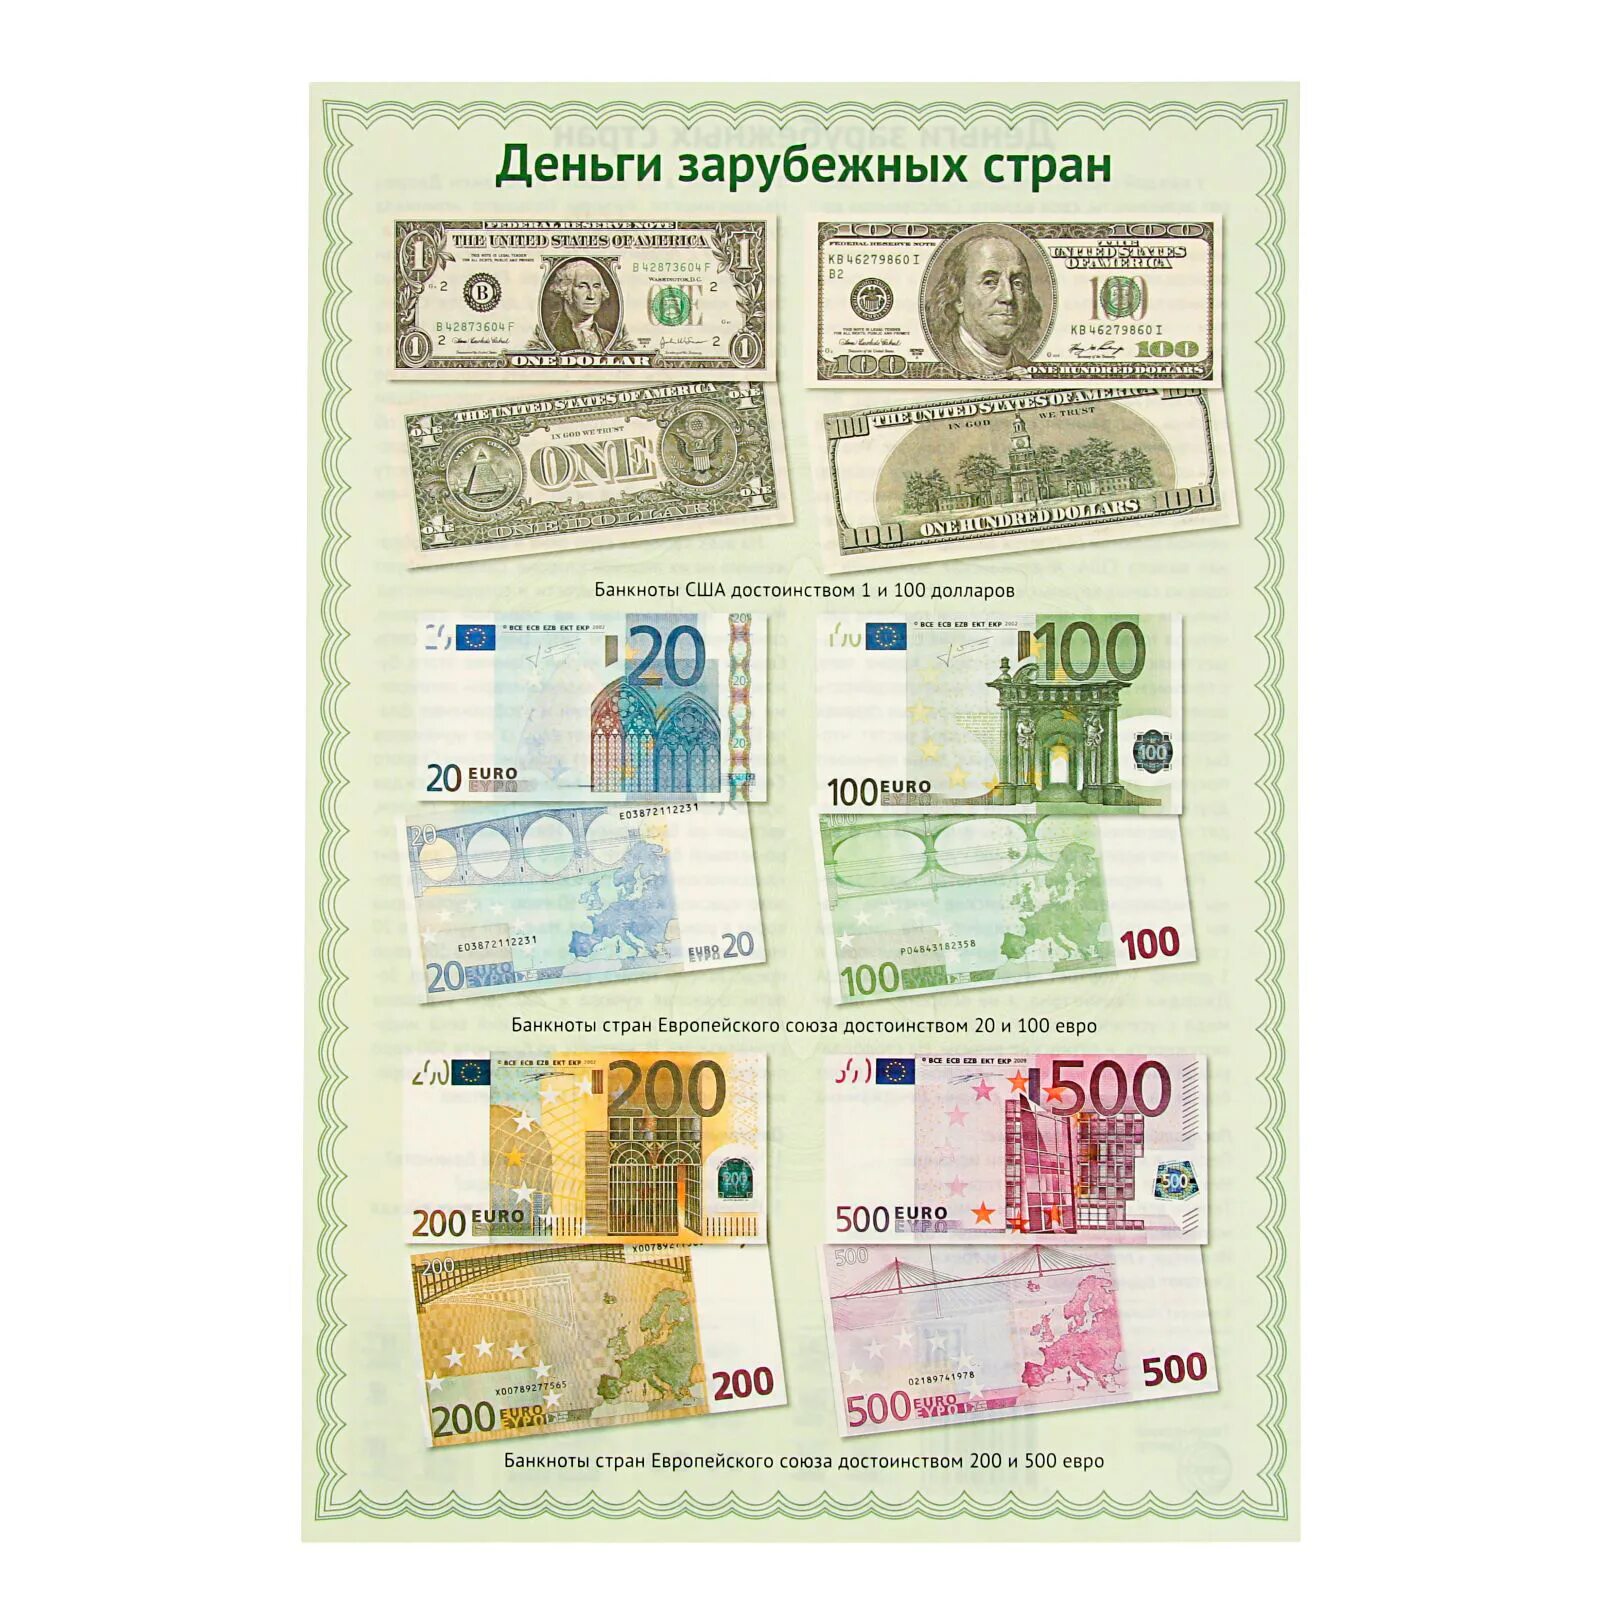 Иностранные деньги в россии. Современные бумажные деньги. Иностранные бумажные деньги. Плакат с купюрами. Изображение денежных купюр и мелочи.